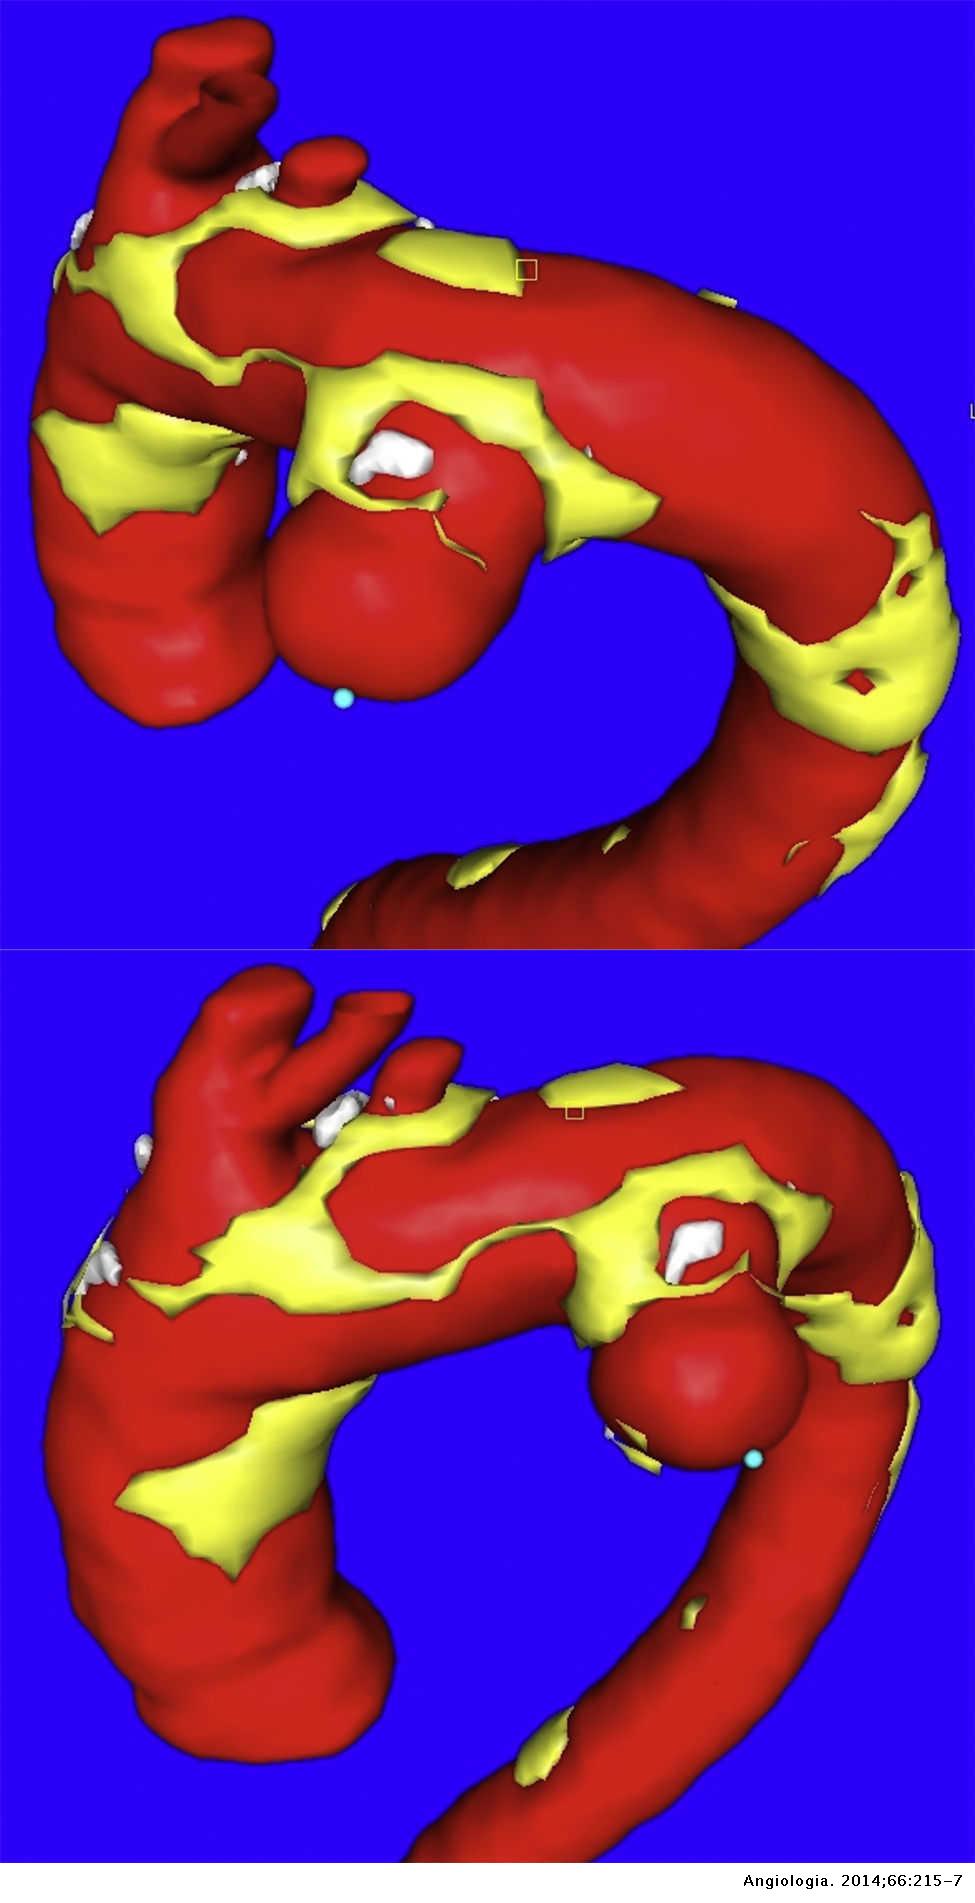 La morfología del aneurisma importa: sacular versus fusiforme | Angiología